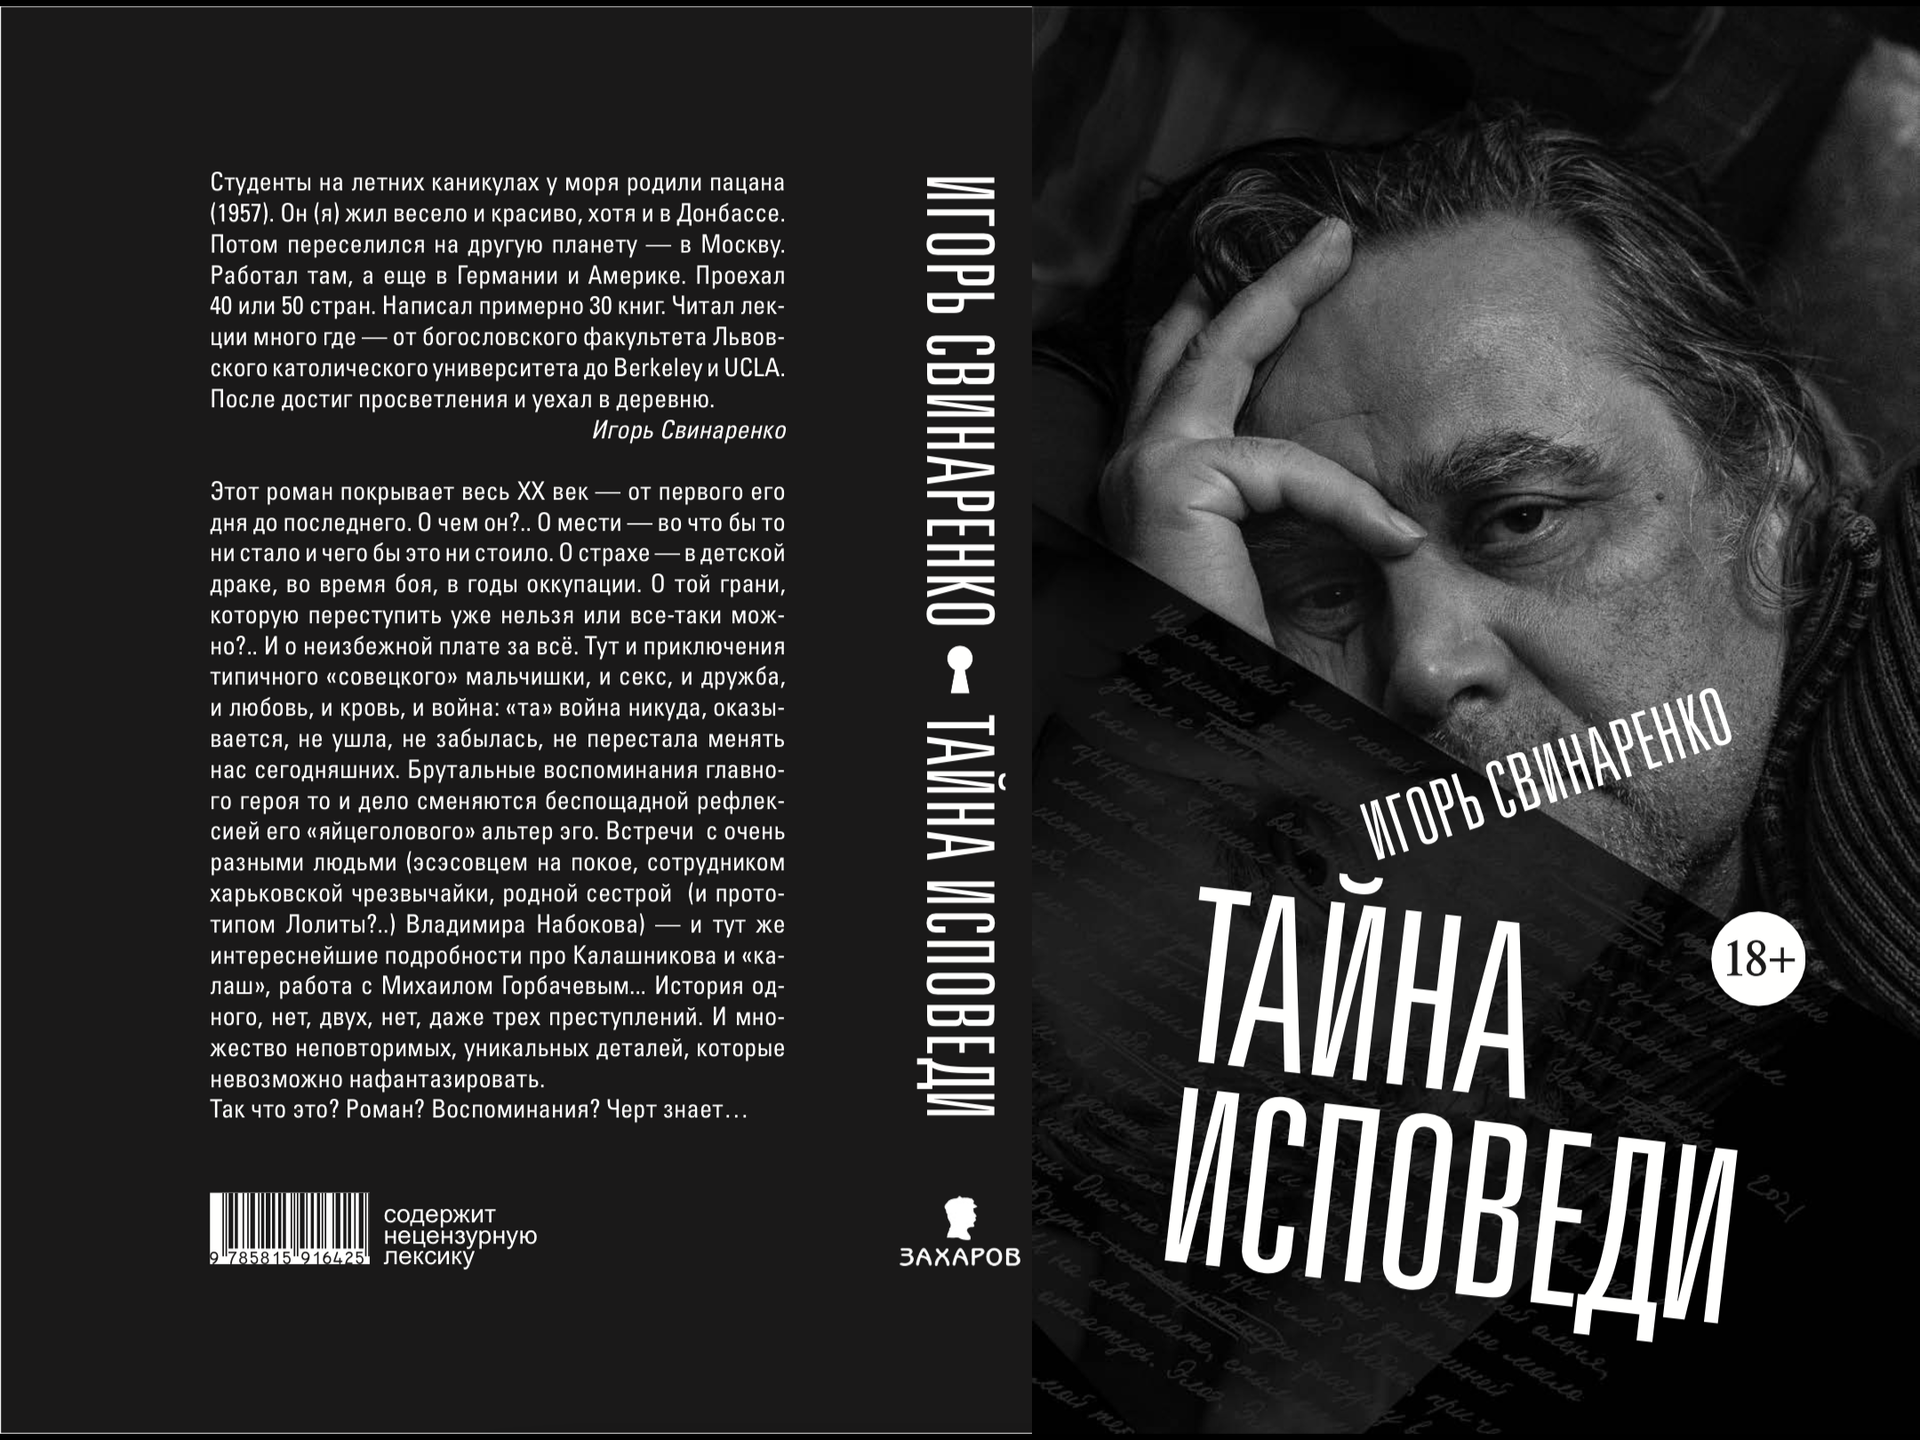 The twentieth century bleeds in the book of confessions of Igor Svinarenko